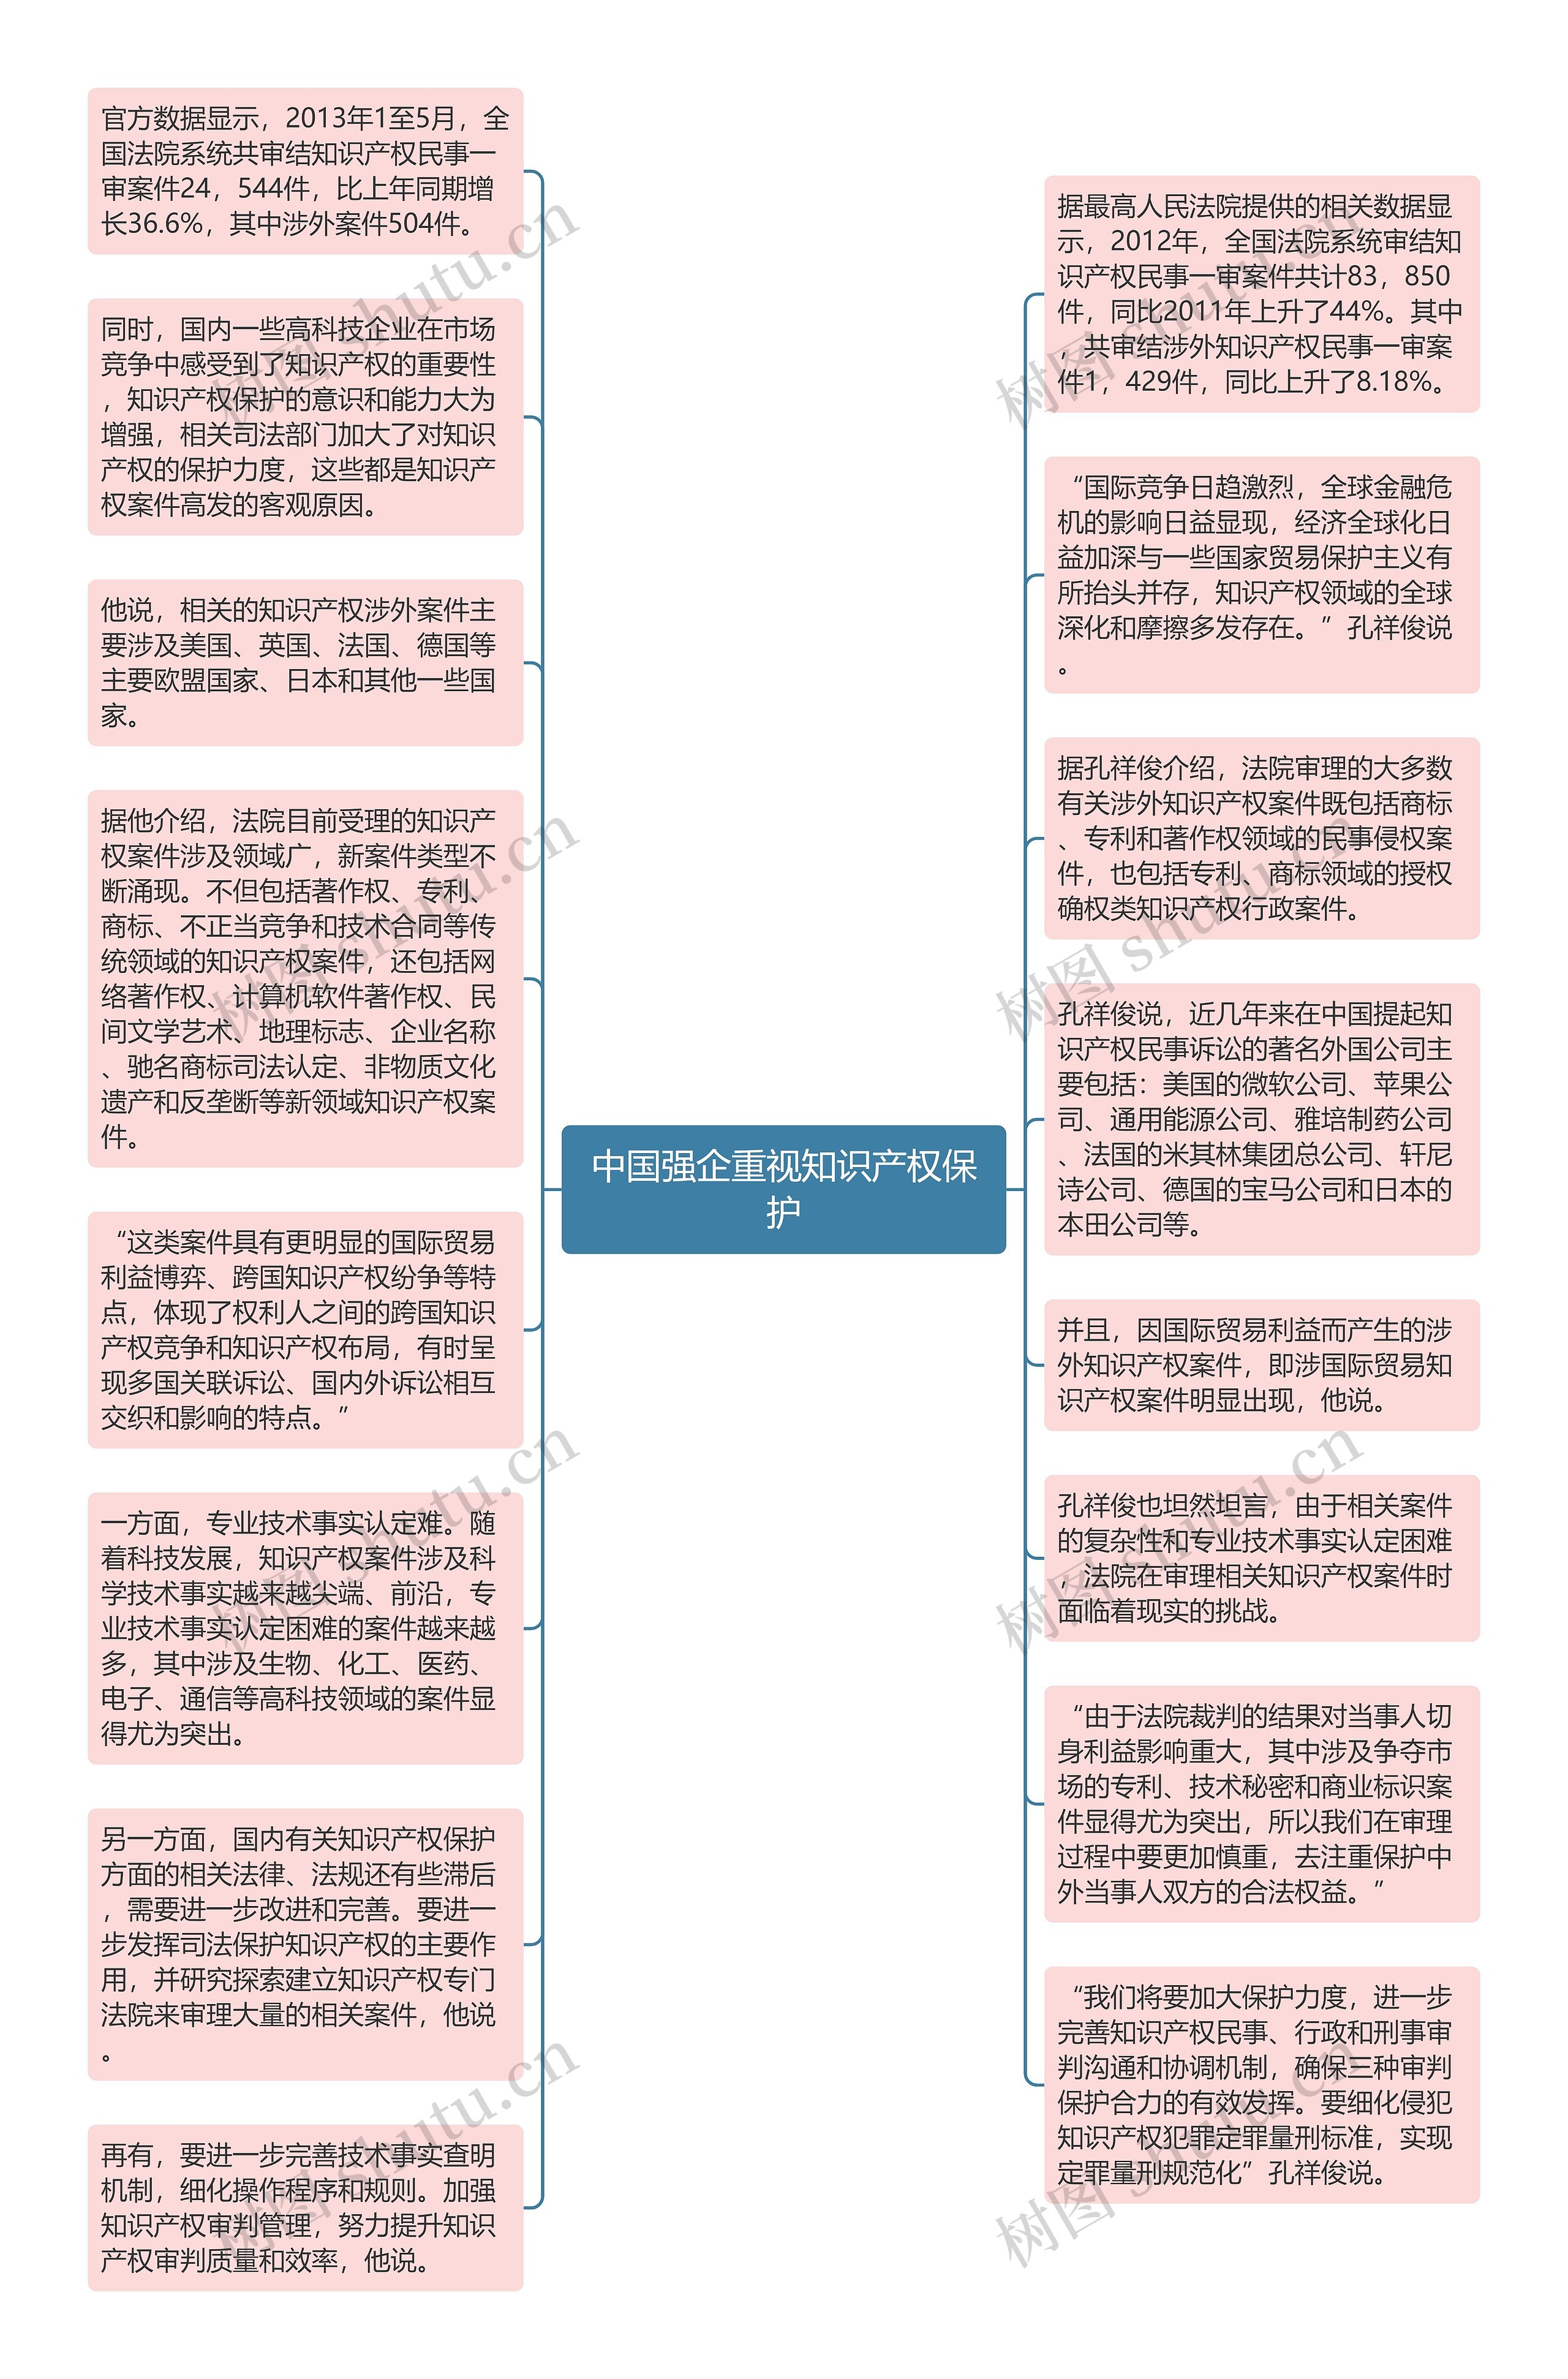 中国强企重视知识产权保护思维导图